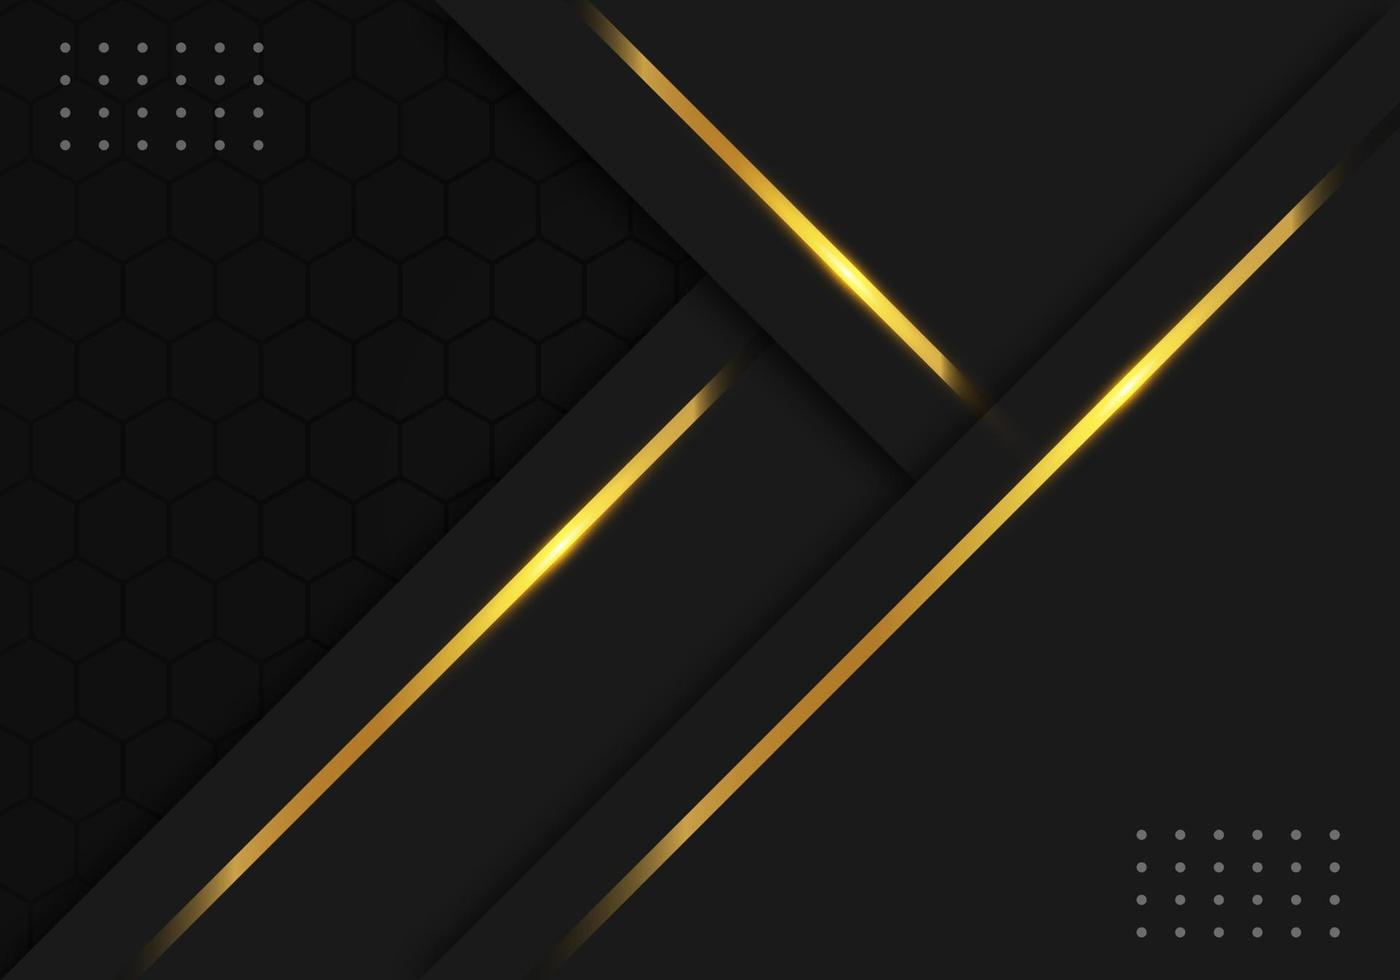 Modern Black Luxury Background with Gold Line Decoration on Dark Hexagon Pattern Metallic Background vector